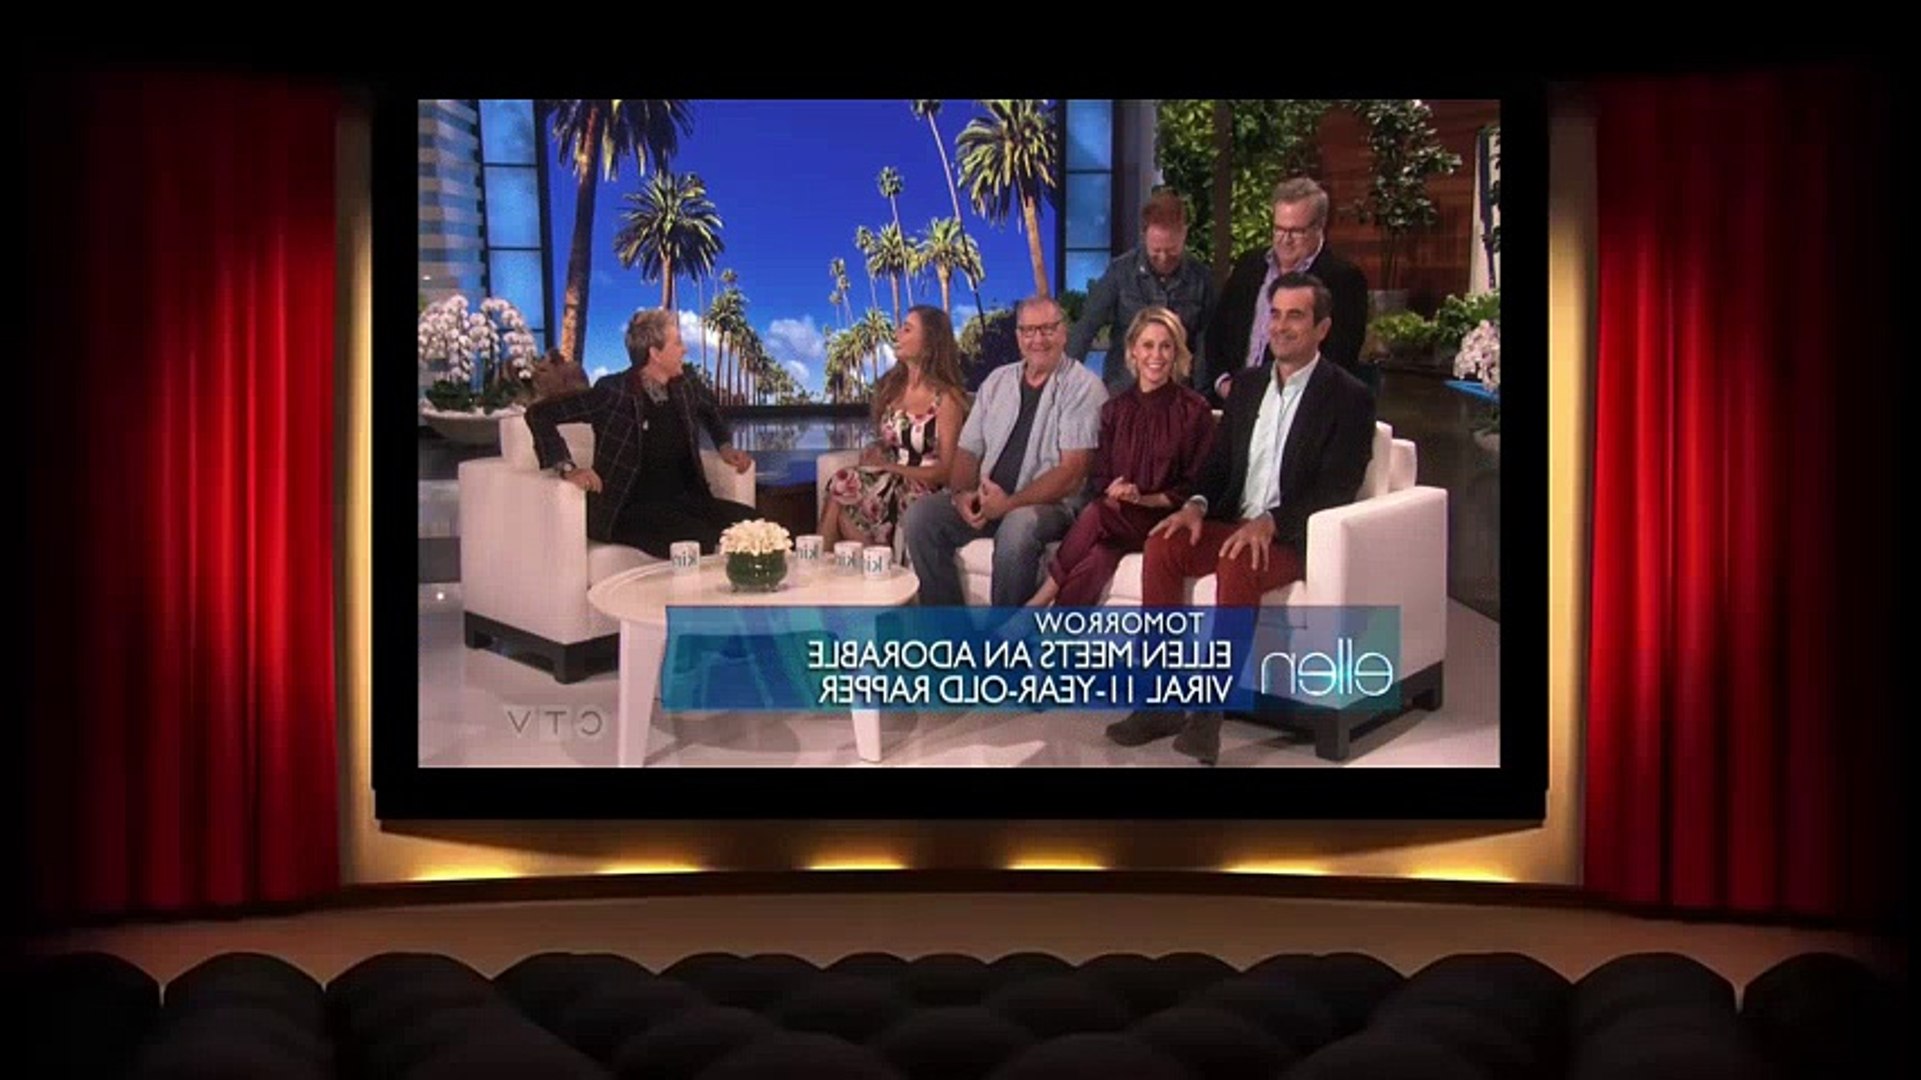 The Ellen DeGeneres Show S16E16 2018 09 25 Cast of Modern Family -  Dailymotion Video